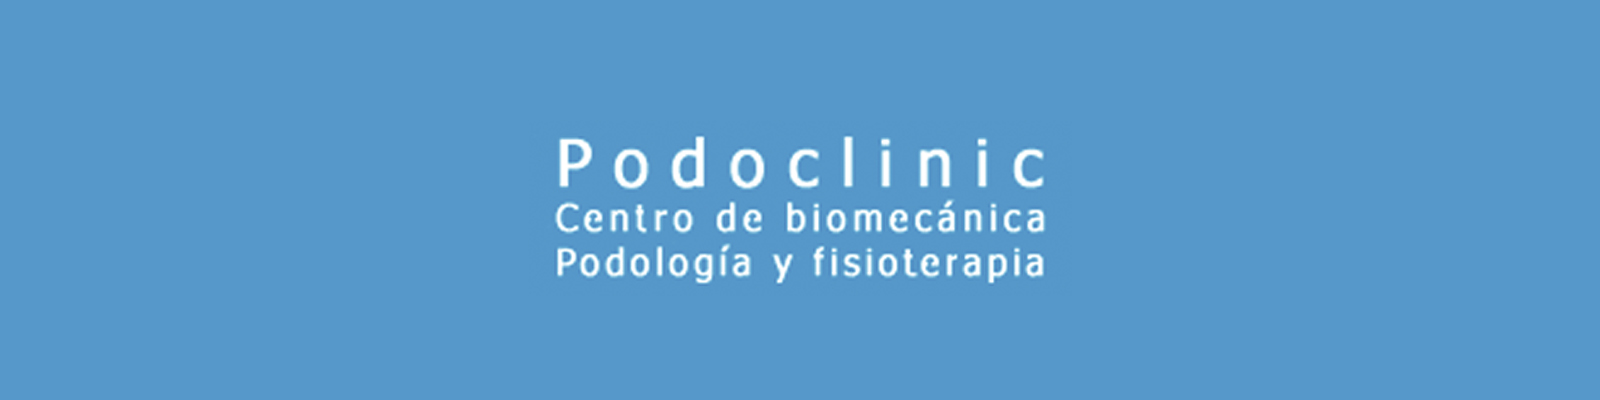 podoclinic_sl